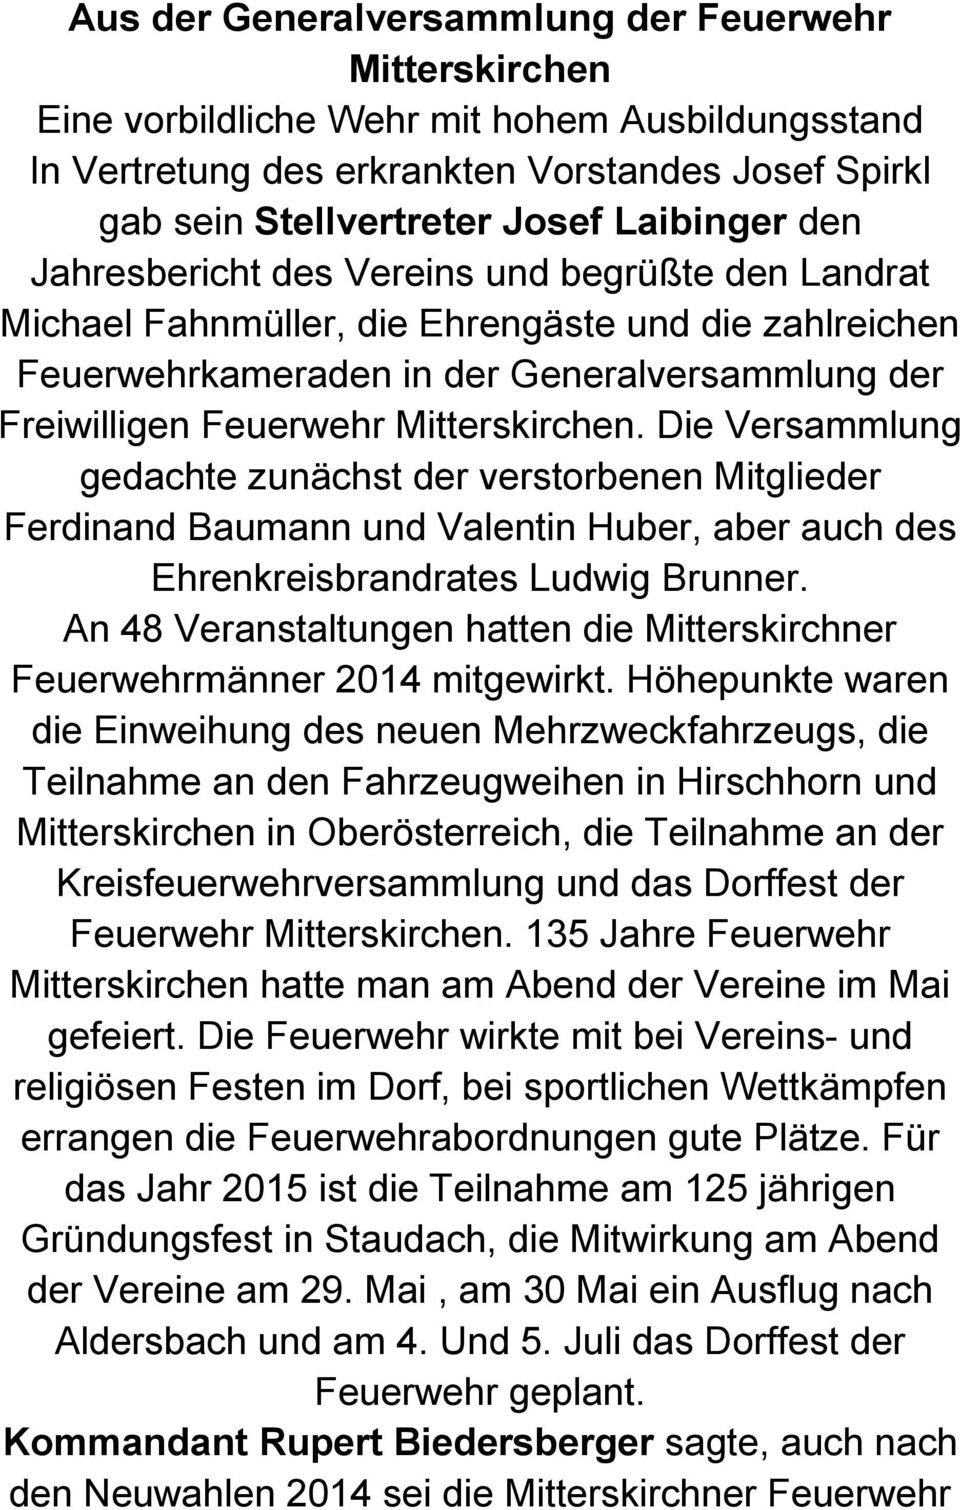 Die Versammlung gedachte zunächst der verstorbenen Mitglieder Ferdinand Baumann und Valentin Huber, aber auch des Ehrenkreisbrandrates Ludwig Brunner.